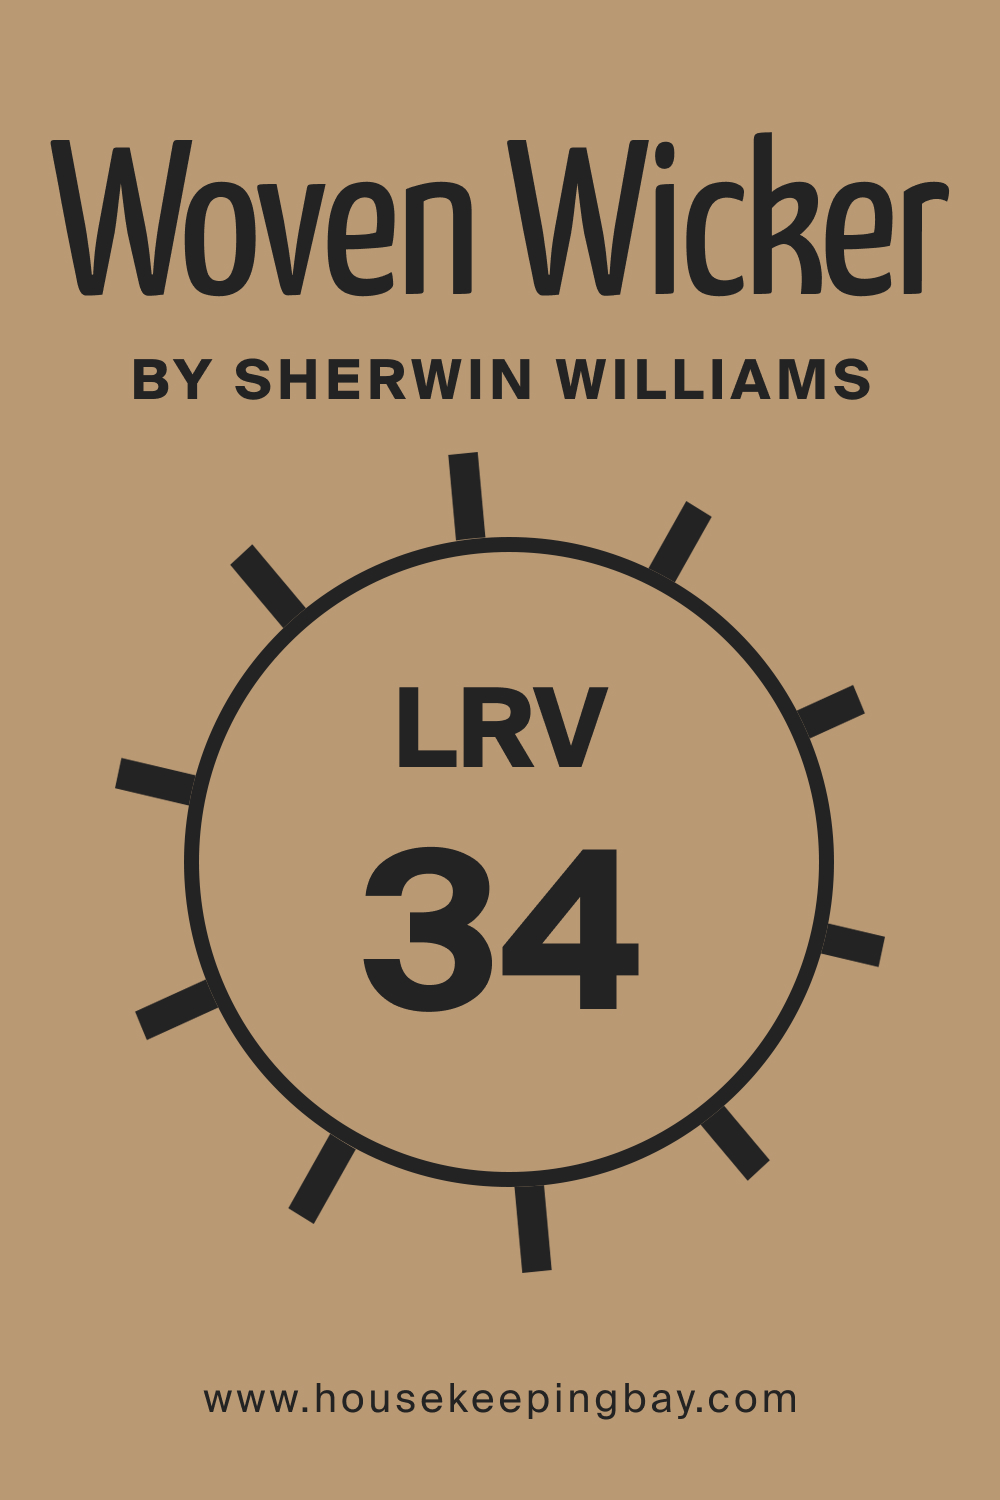 SW 9104 Woven Wicker by Sherwin Williams. LRV 34